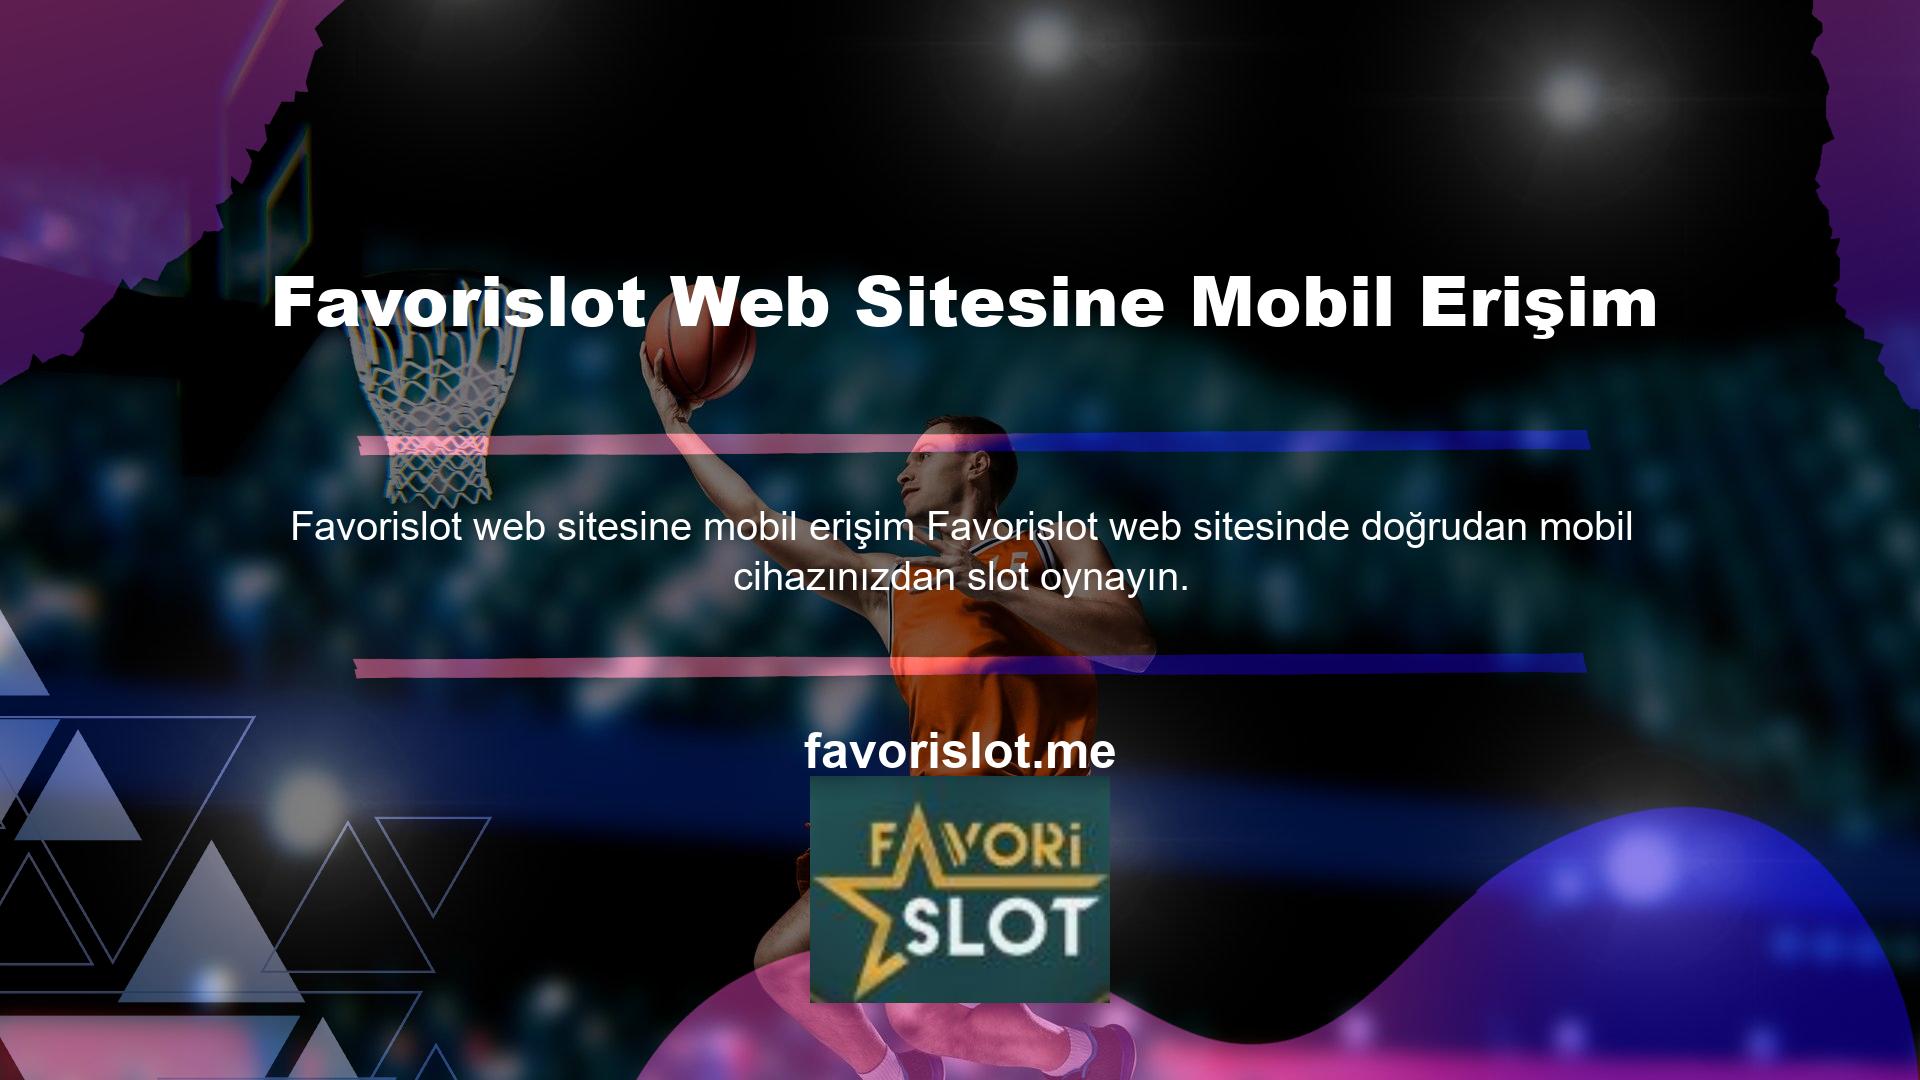 Çünkü Favorislot web sitesi mobil erişim için oldukça iyi tasarlanmış bir mobil sistem altyapısına sahiptir